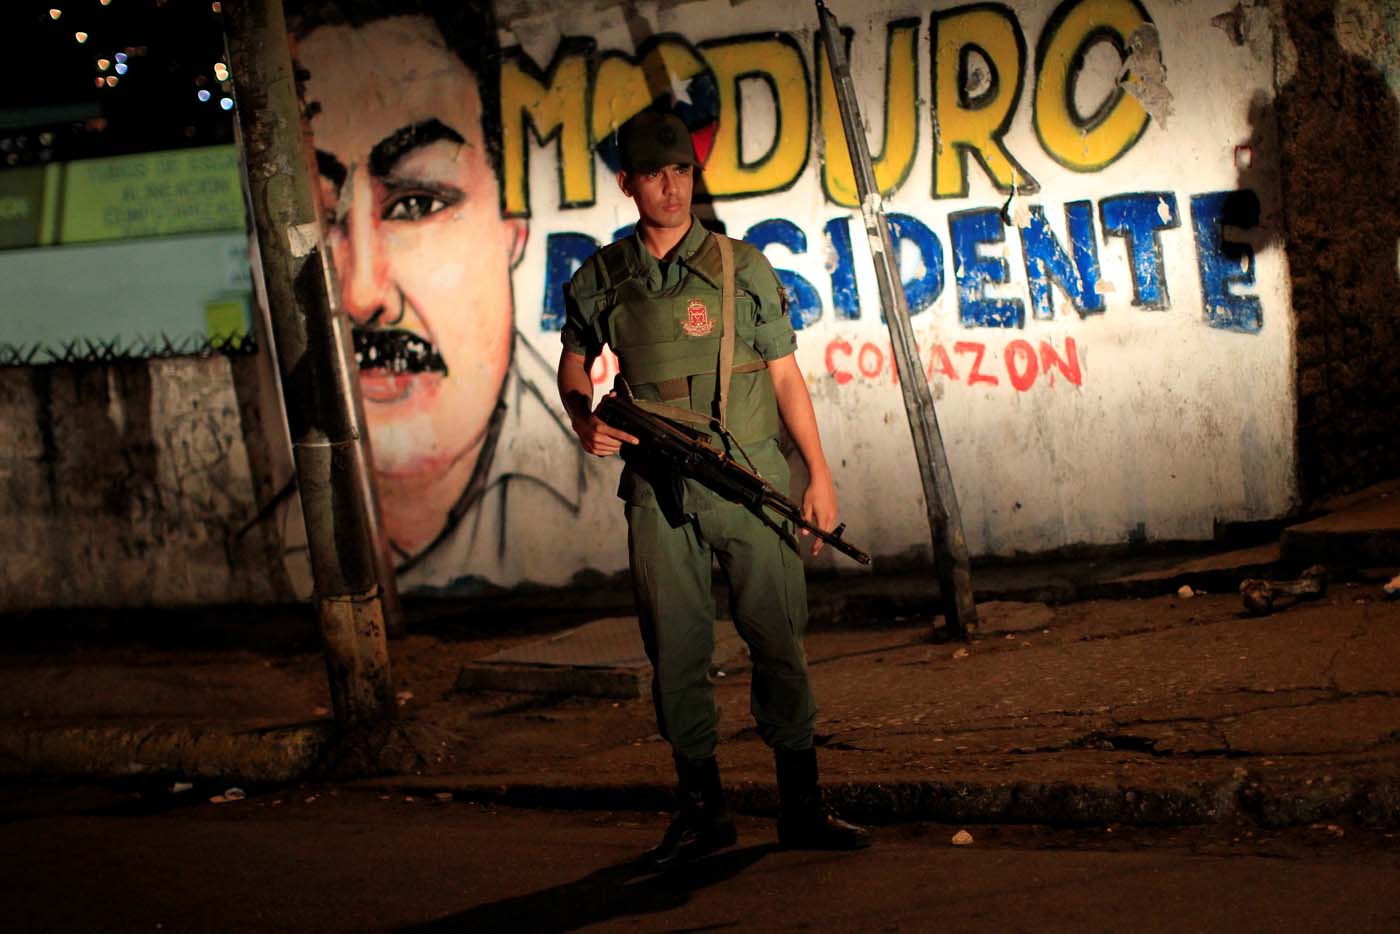 ¡Orgullo bolivariano! Venezuela nombrado el país más peligroso para vivir por segundo año consecutivo